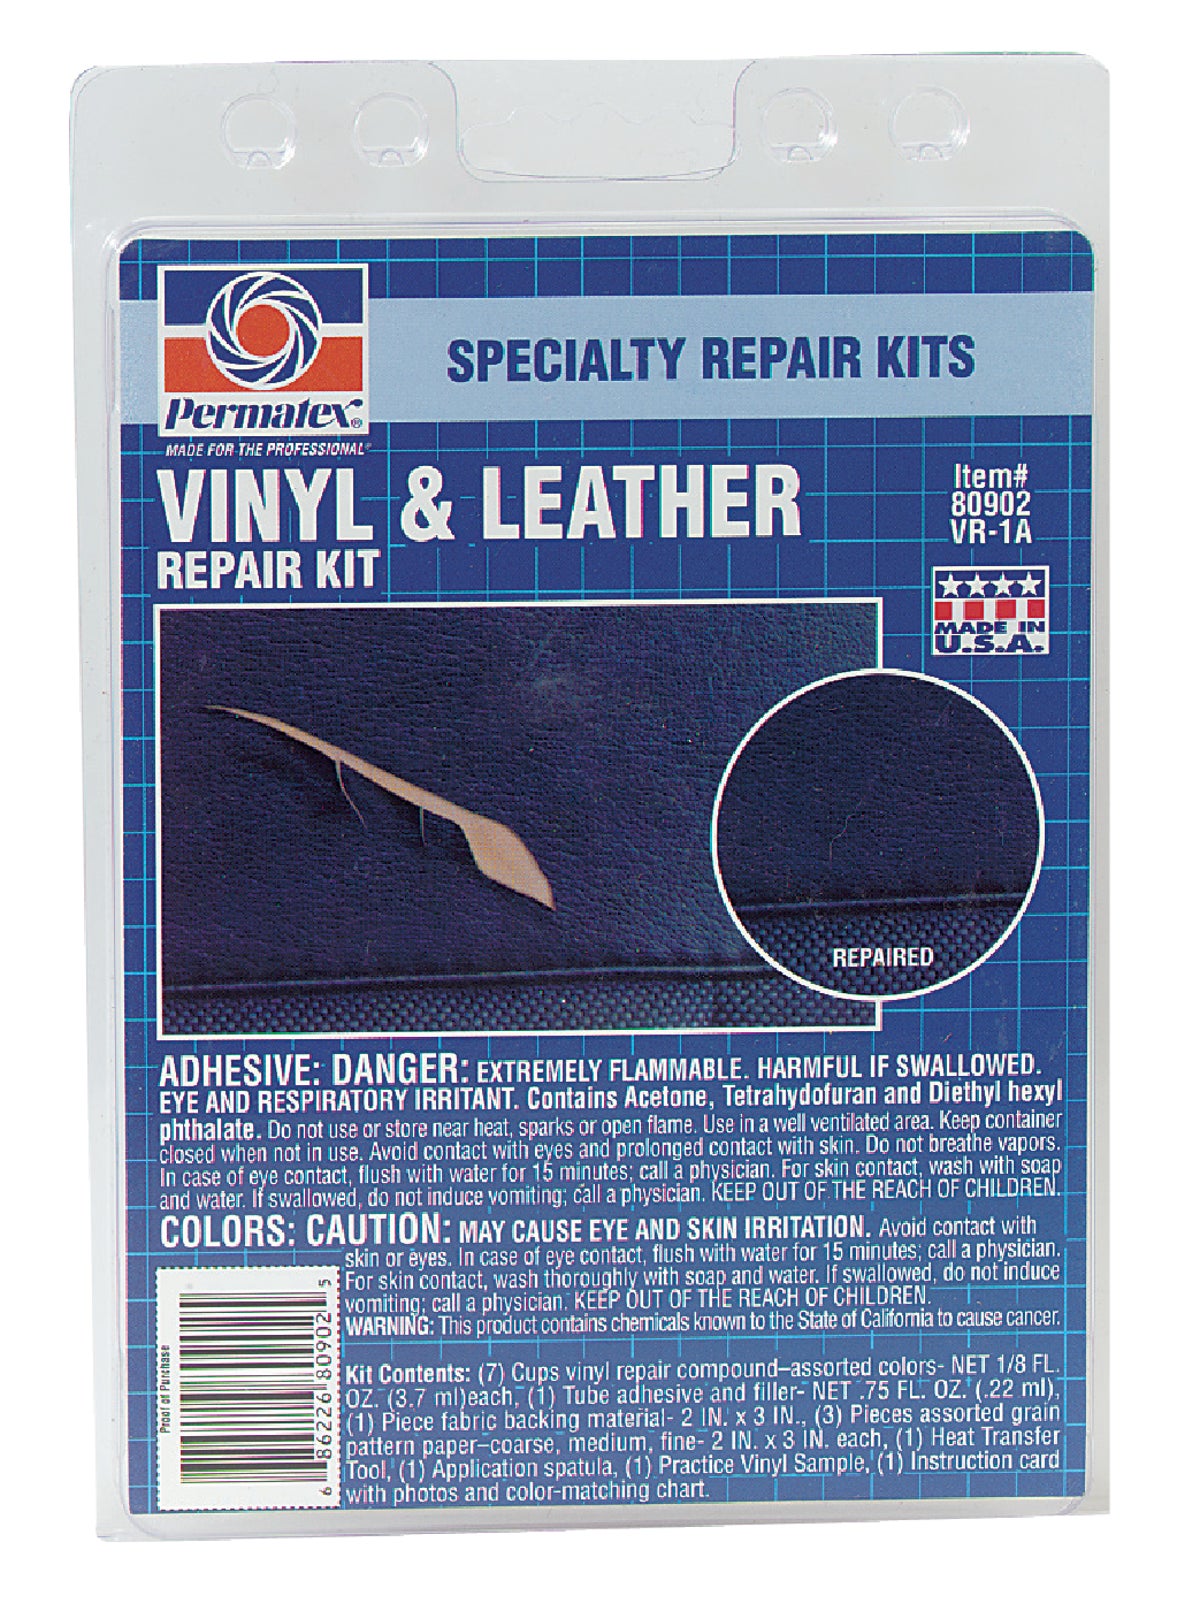 Vinyl & Leather Repair Kit